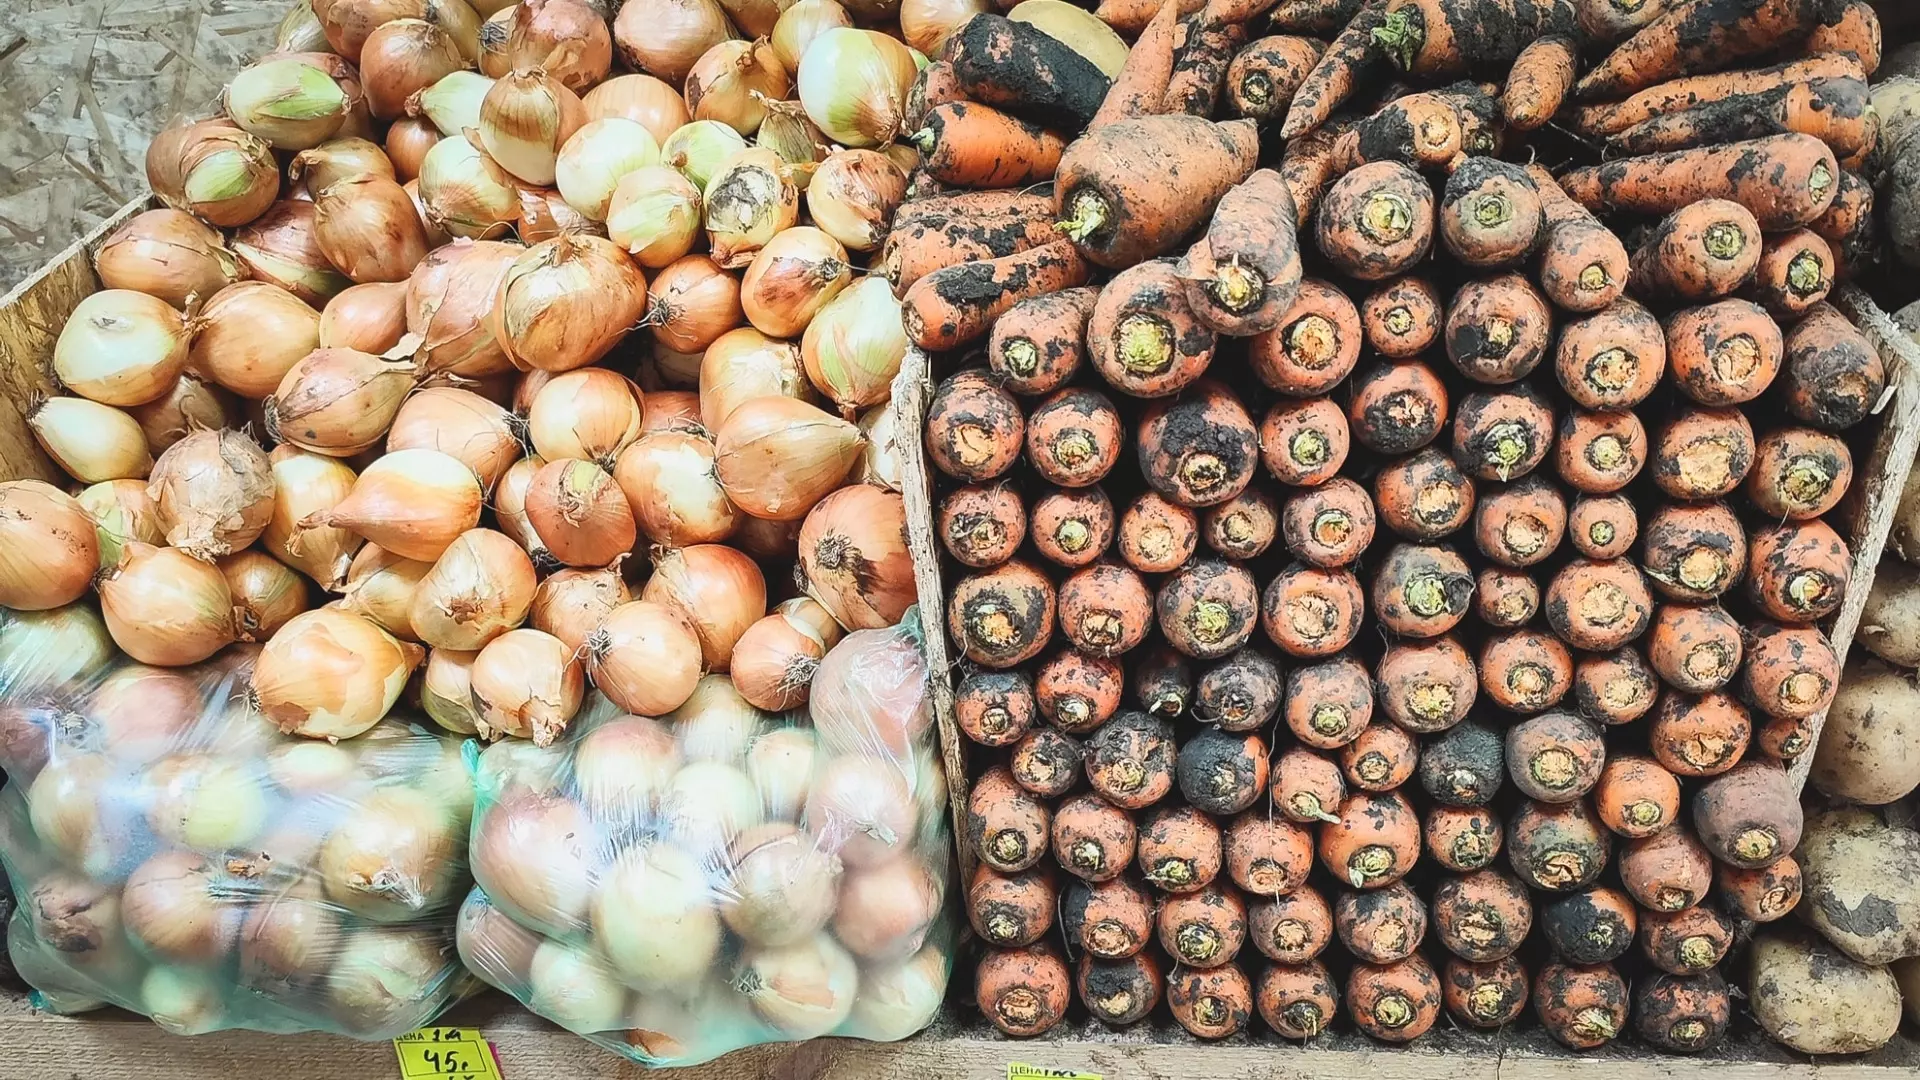 Волгоградская область столкнулась с нехваткой импортных семян для овощей